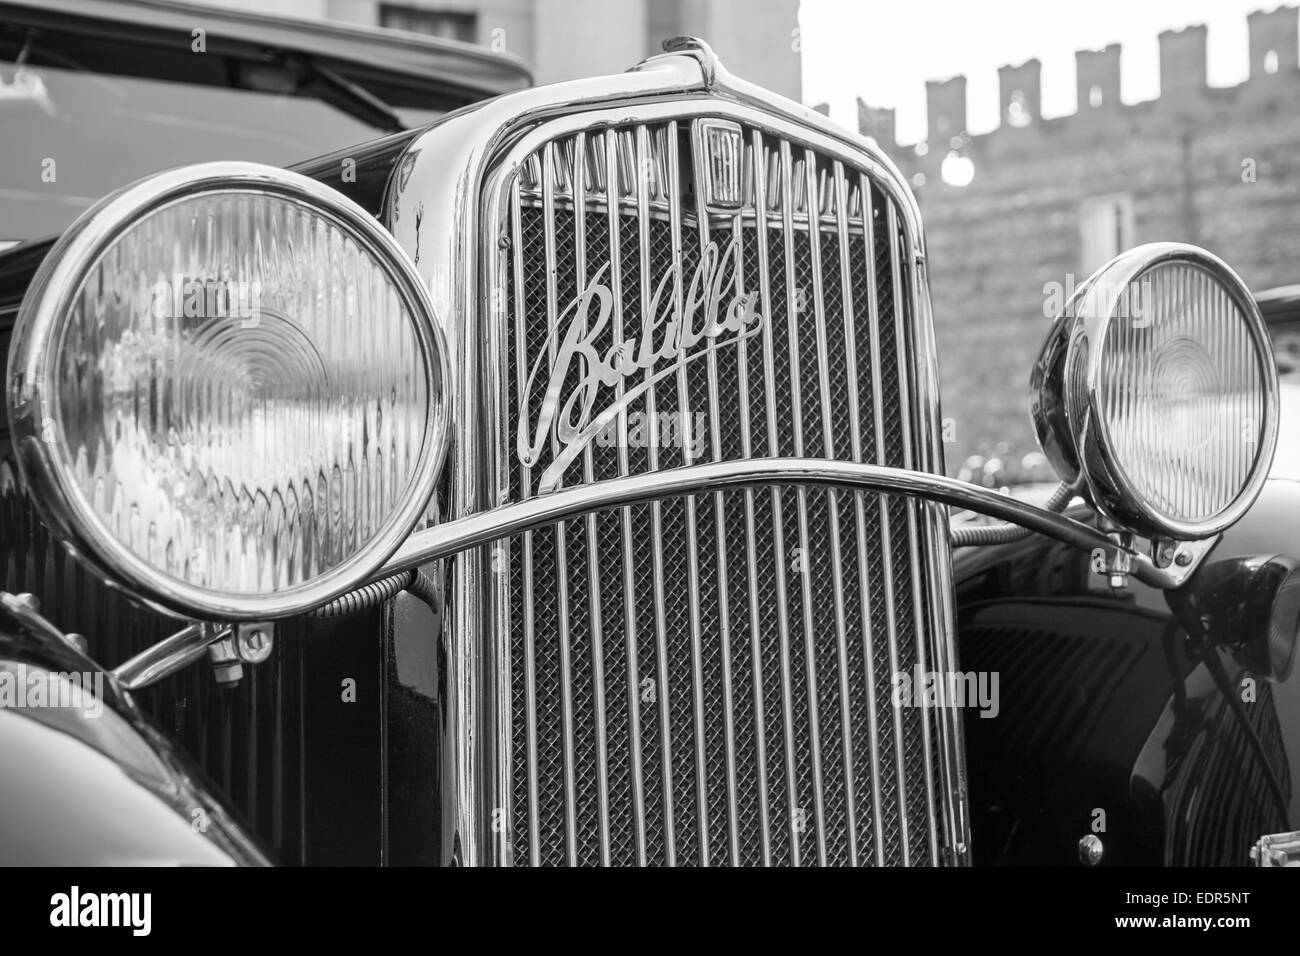 VERONA, Italia - 6 gennaio: Classic vintage auto. Benaco Classic Automobile Club organizza un raduno chiamato 'strega del poliziotto' su Foto Stock